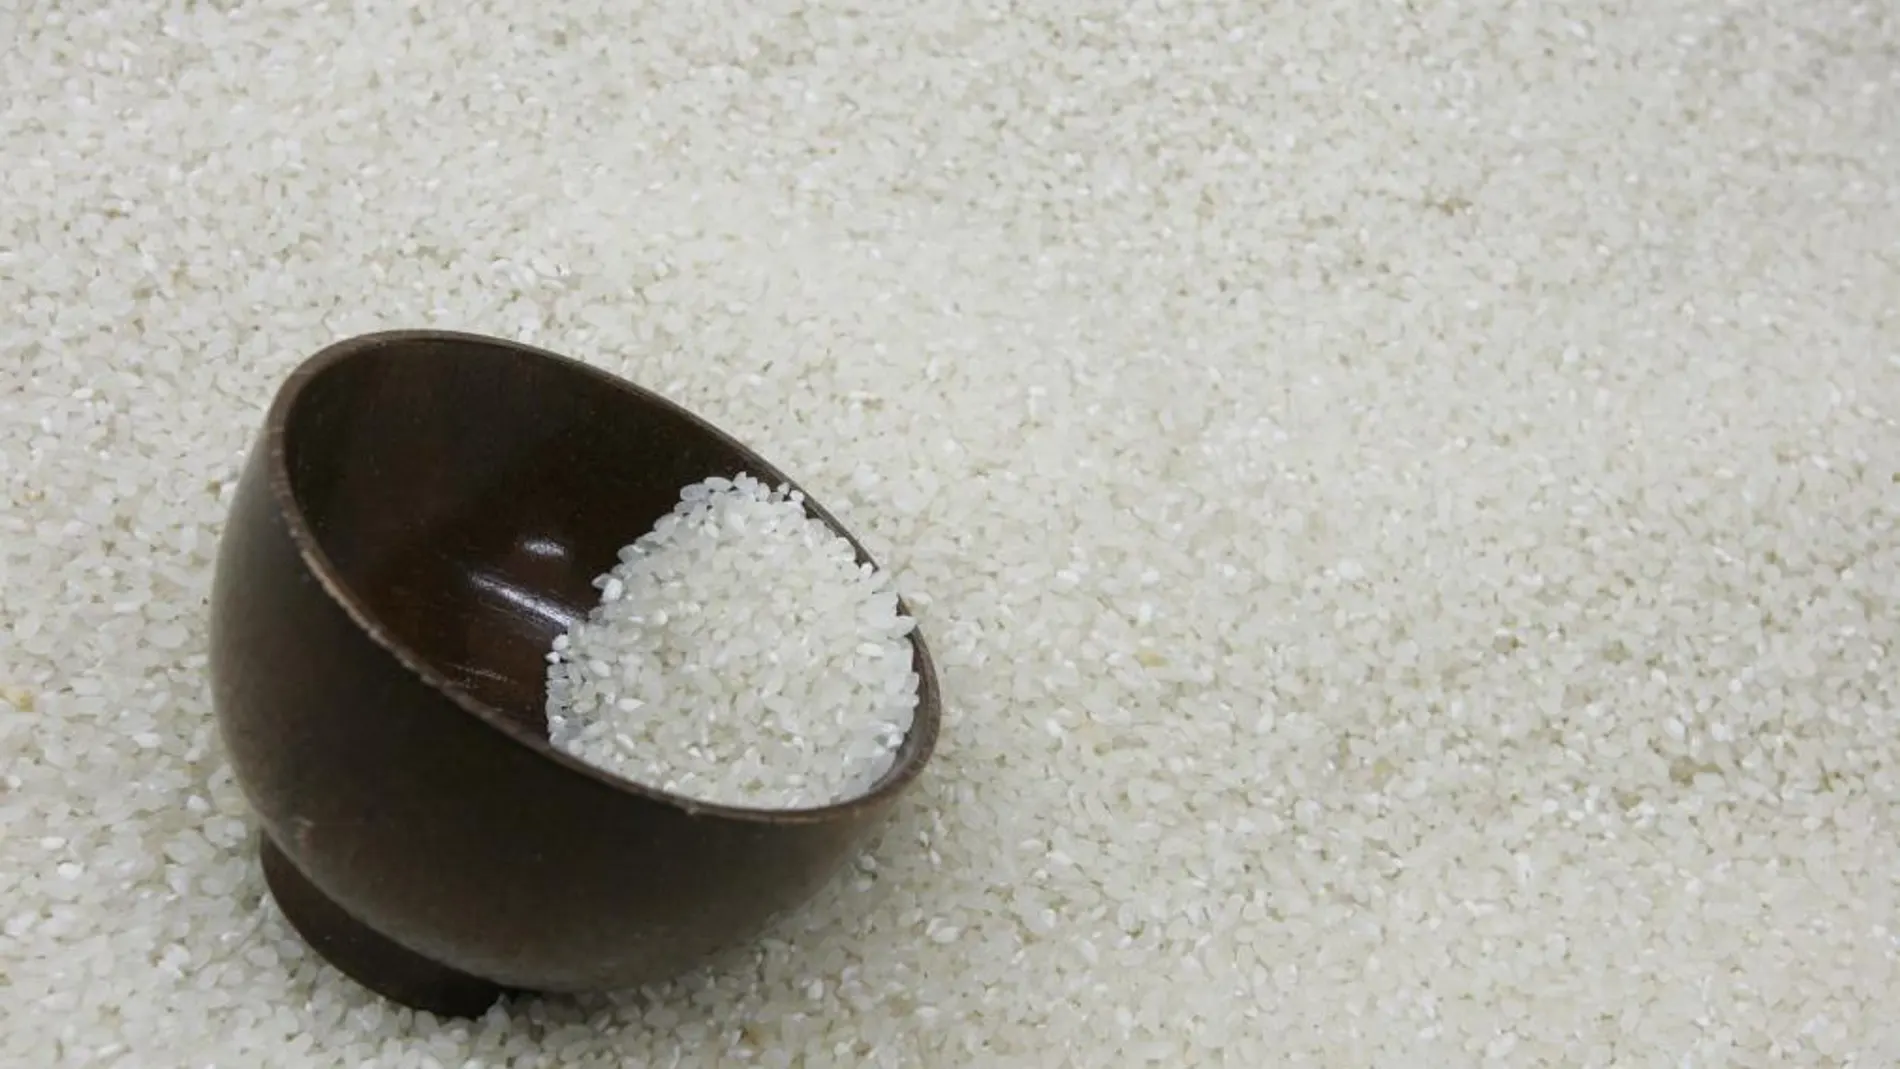 Uno de los últimos fraudes masivos se ha producido con arroz